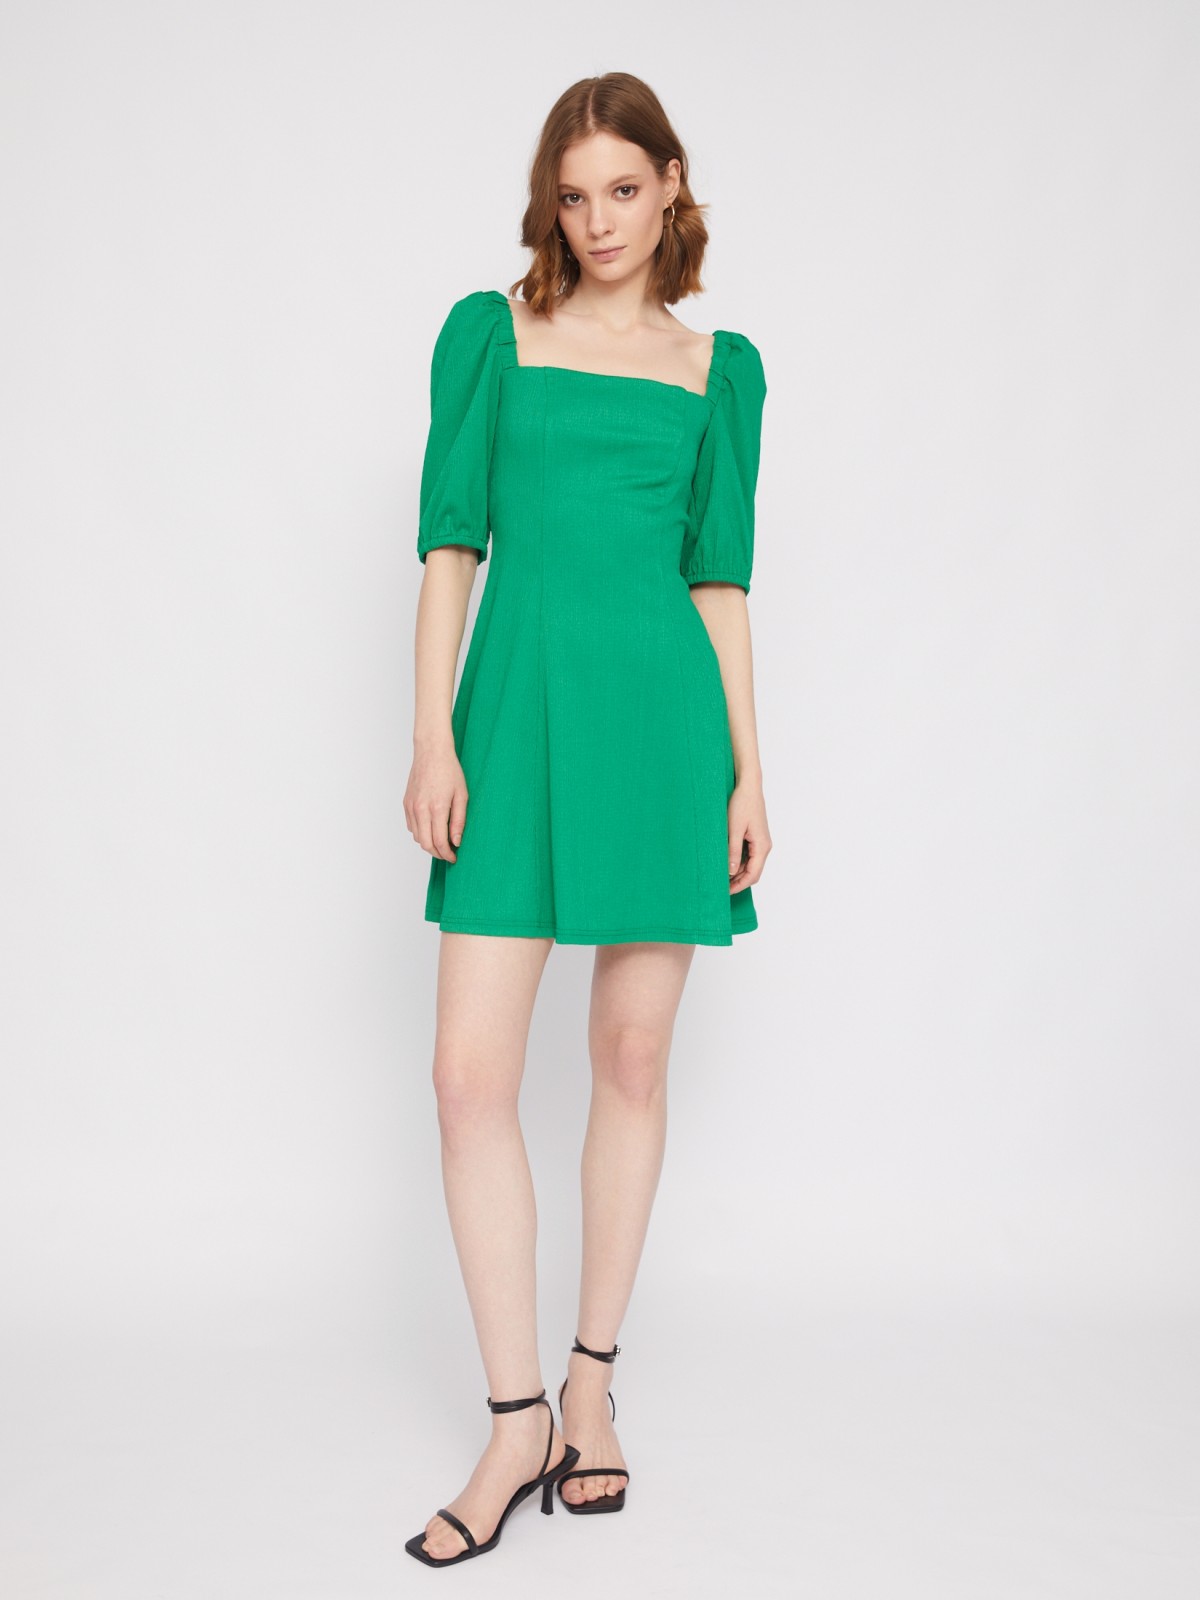 Платье мини с вырезом и коротким рукавом фонарик zolla 024228162053, цвет зеленый, размер S